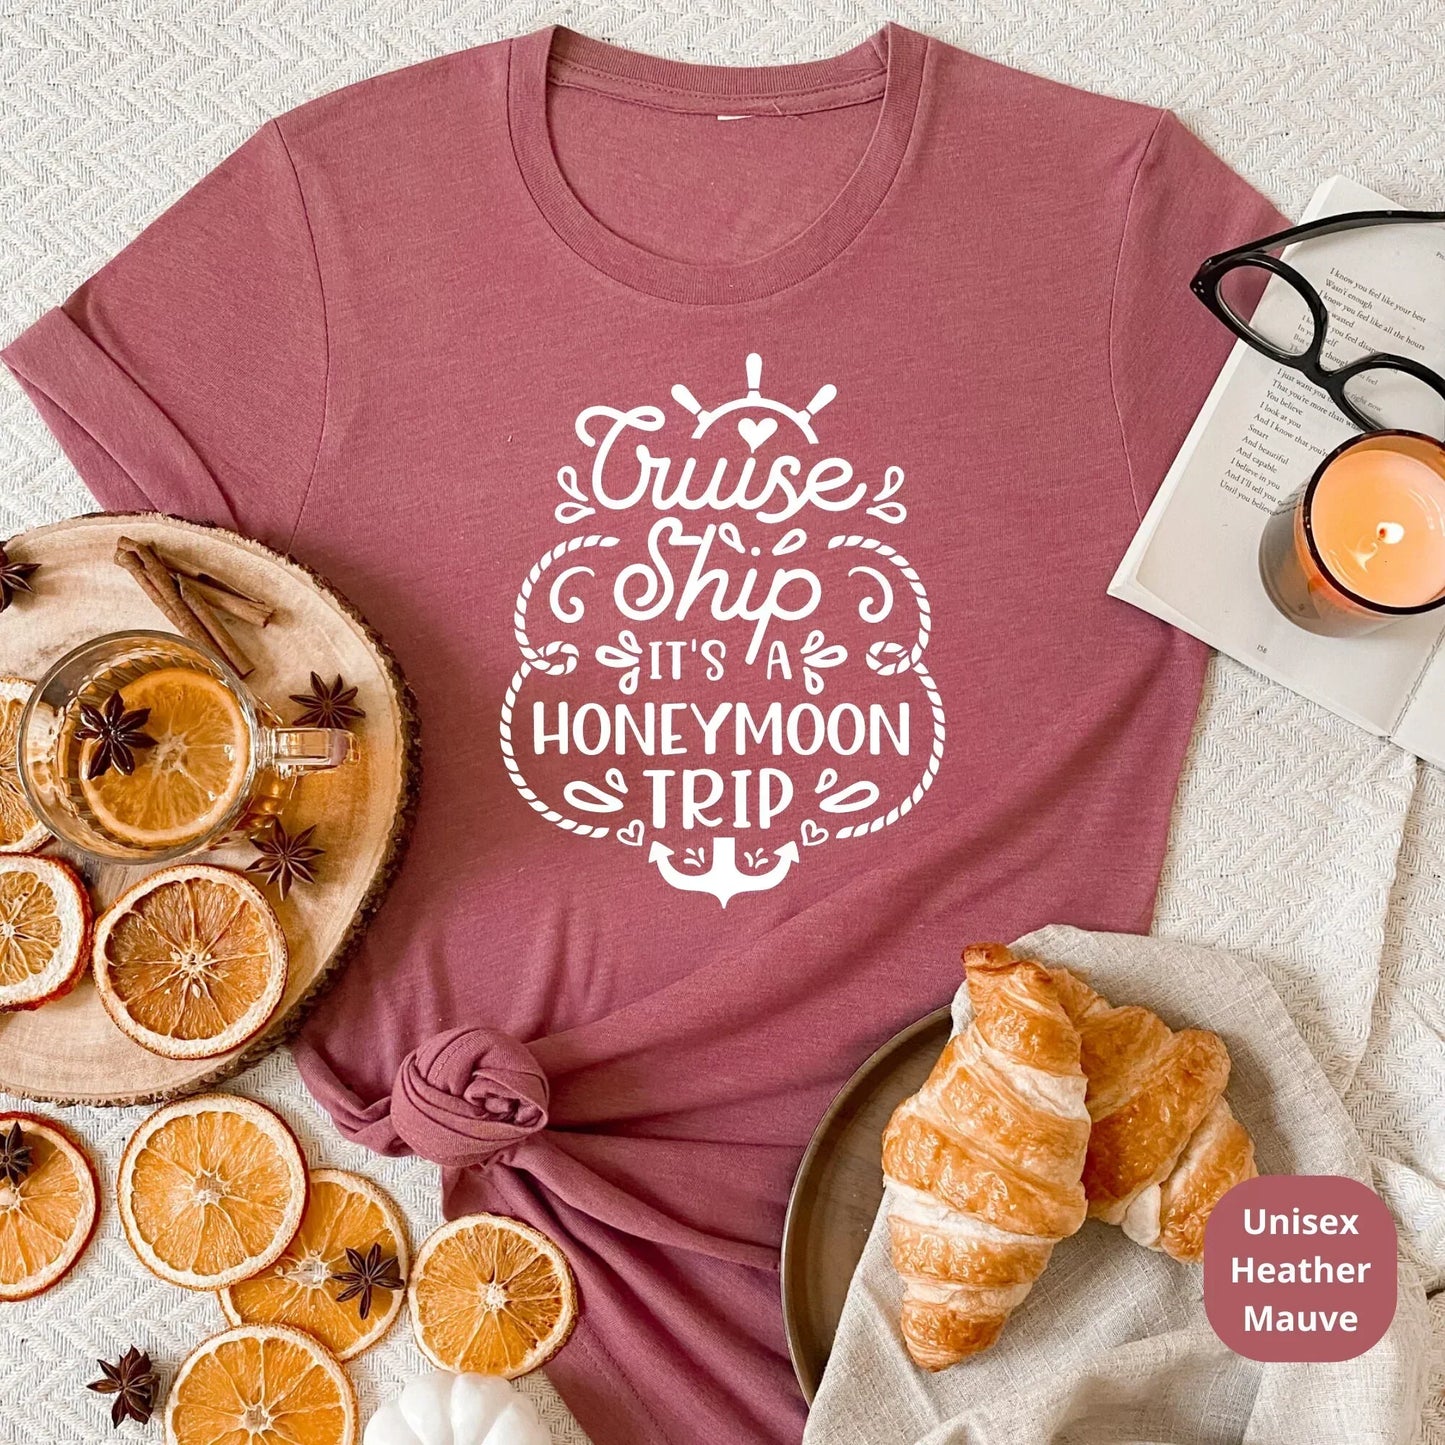 Honeymoon Cruise Shirts HMDesignStudioUS